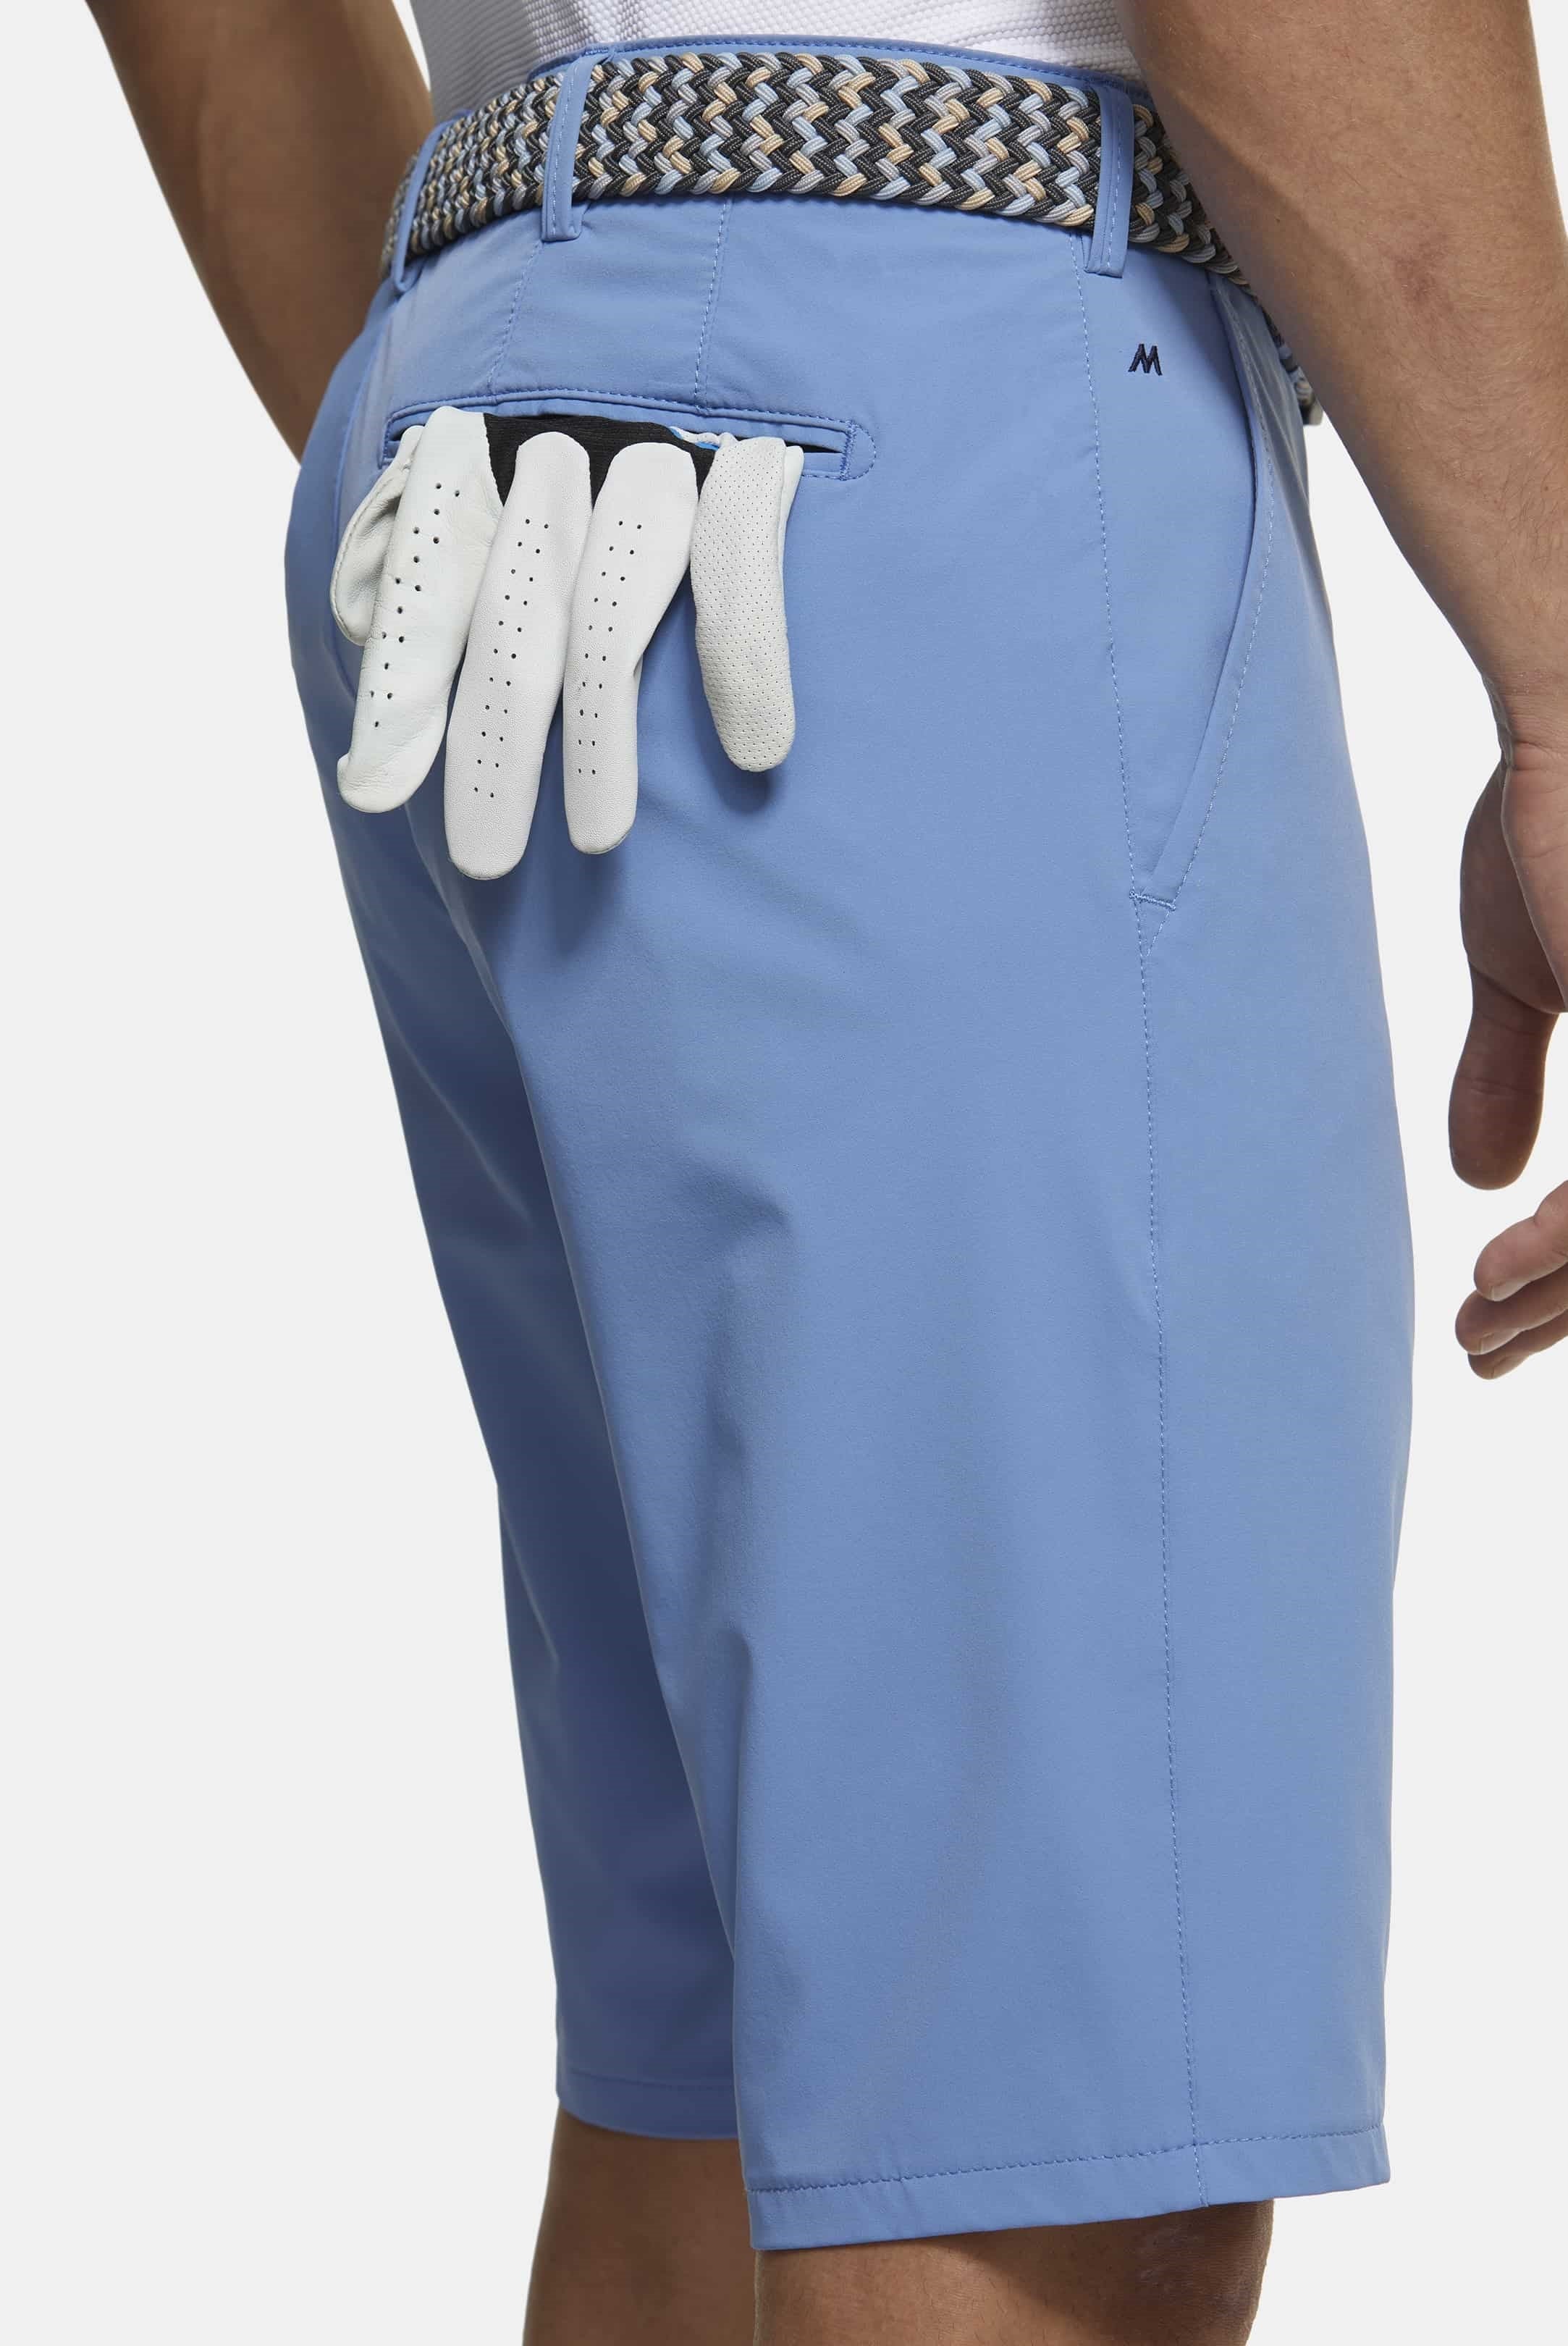 30% OFF - MEYER Golf Shorts - St. Andrews 8070 High Performance Cotton - Light Blue - Size: 40" Waist